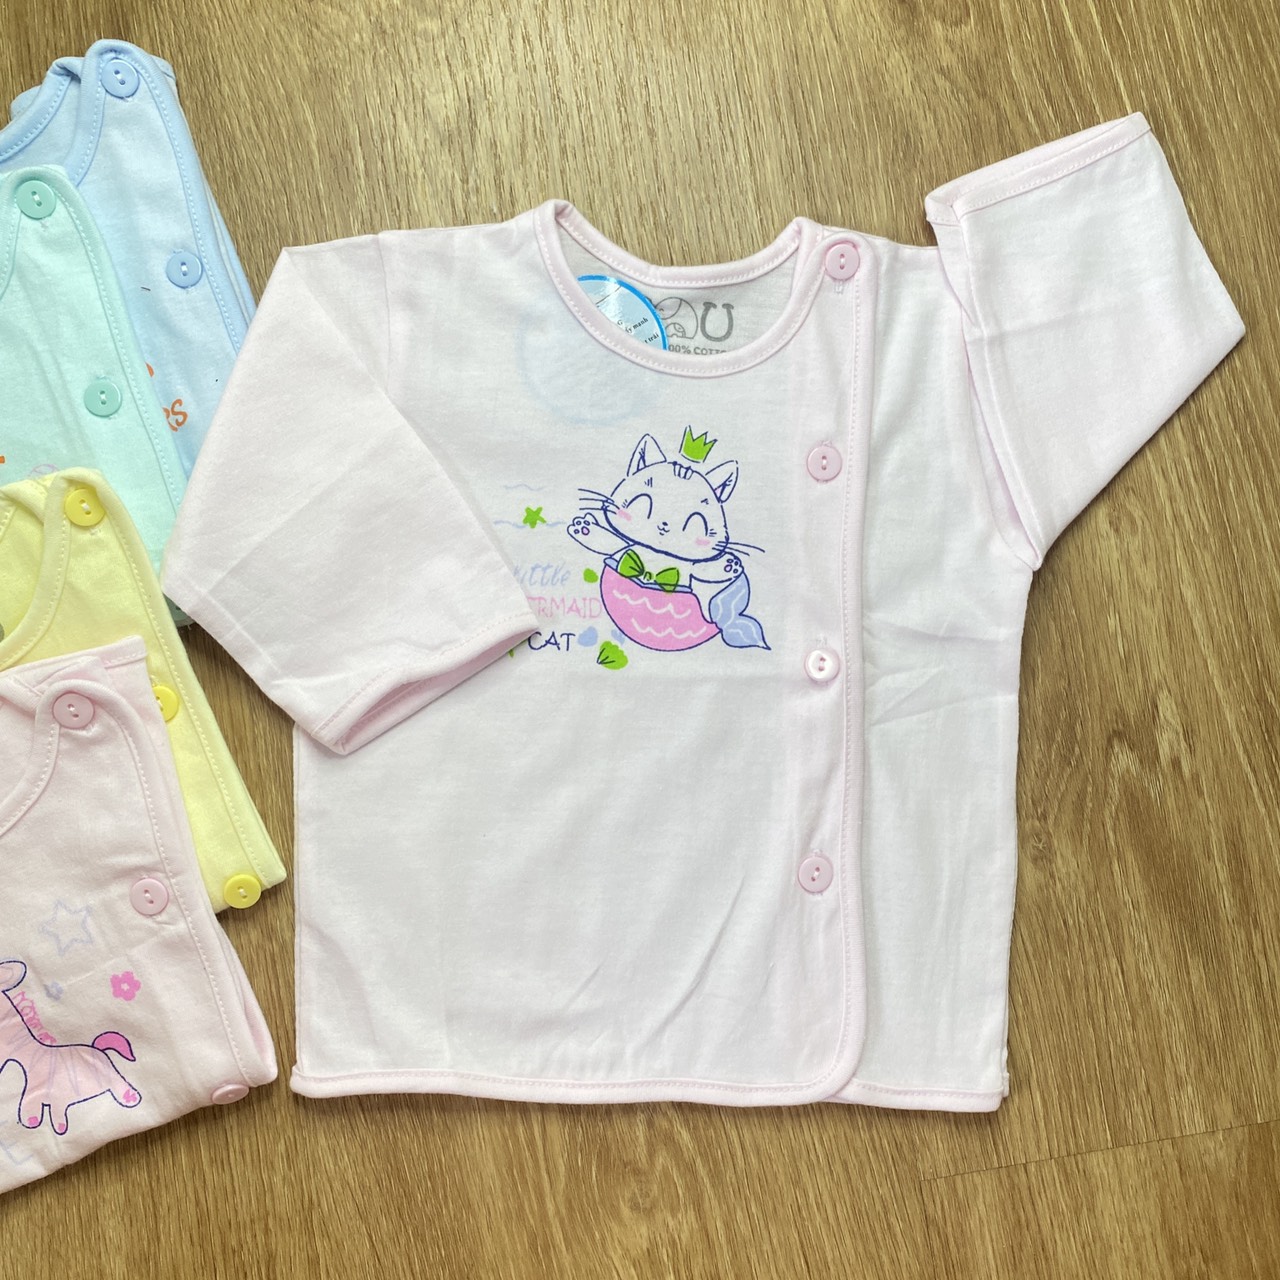 Combo 5 áo sơ sinh cotton Tay Dài Cài Lệch Màu Nhạt JOU-TomTom Baby- Size 1,2,3 cho bé sơ sinh - 9kg